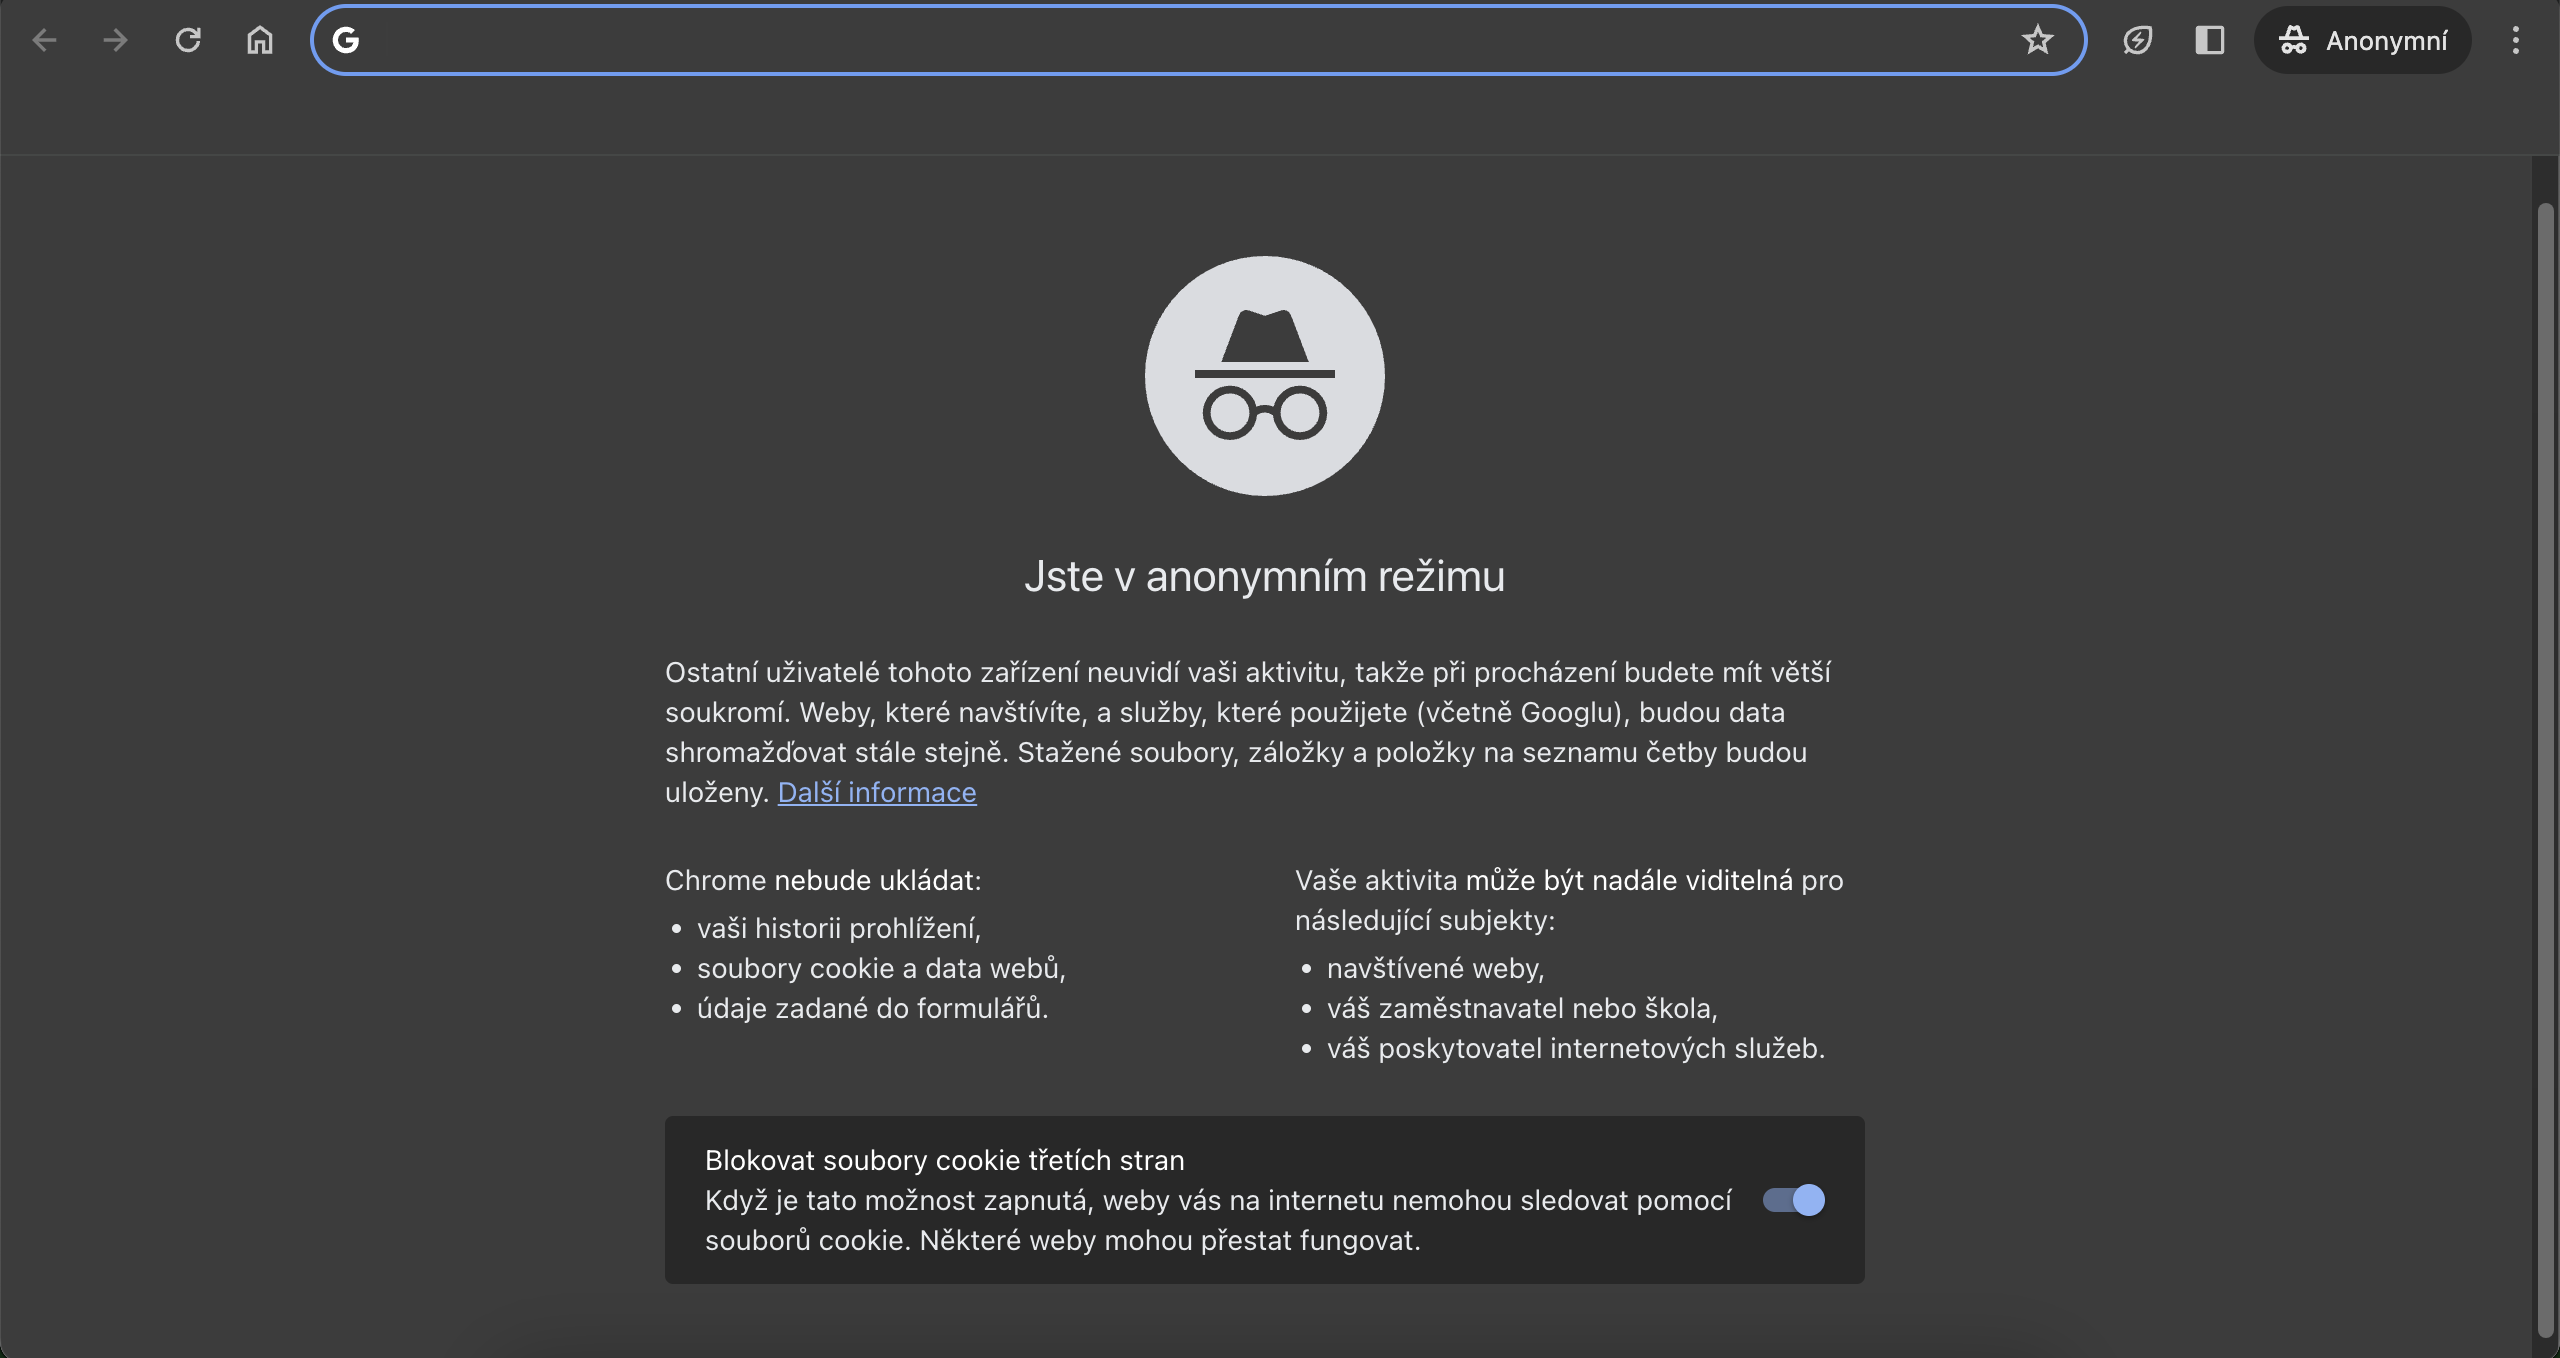 Google Chrome: Anonymní režim